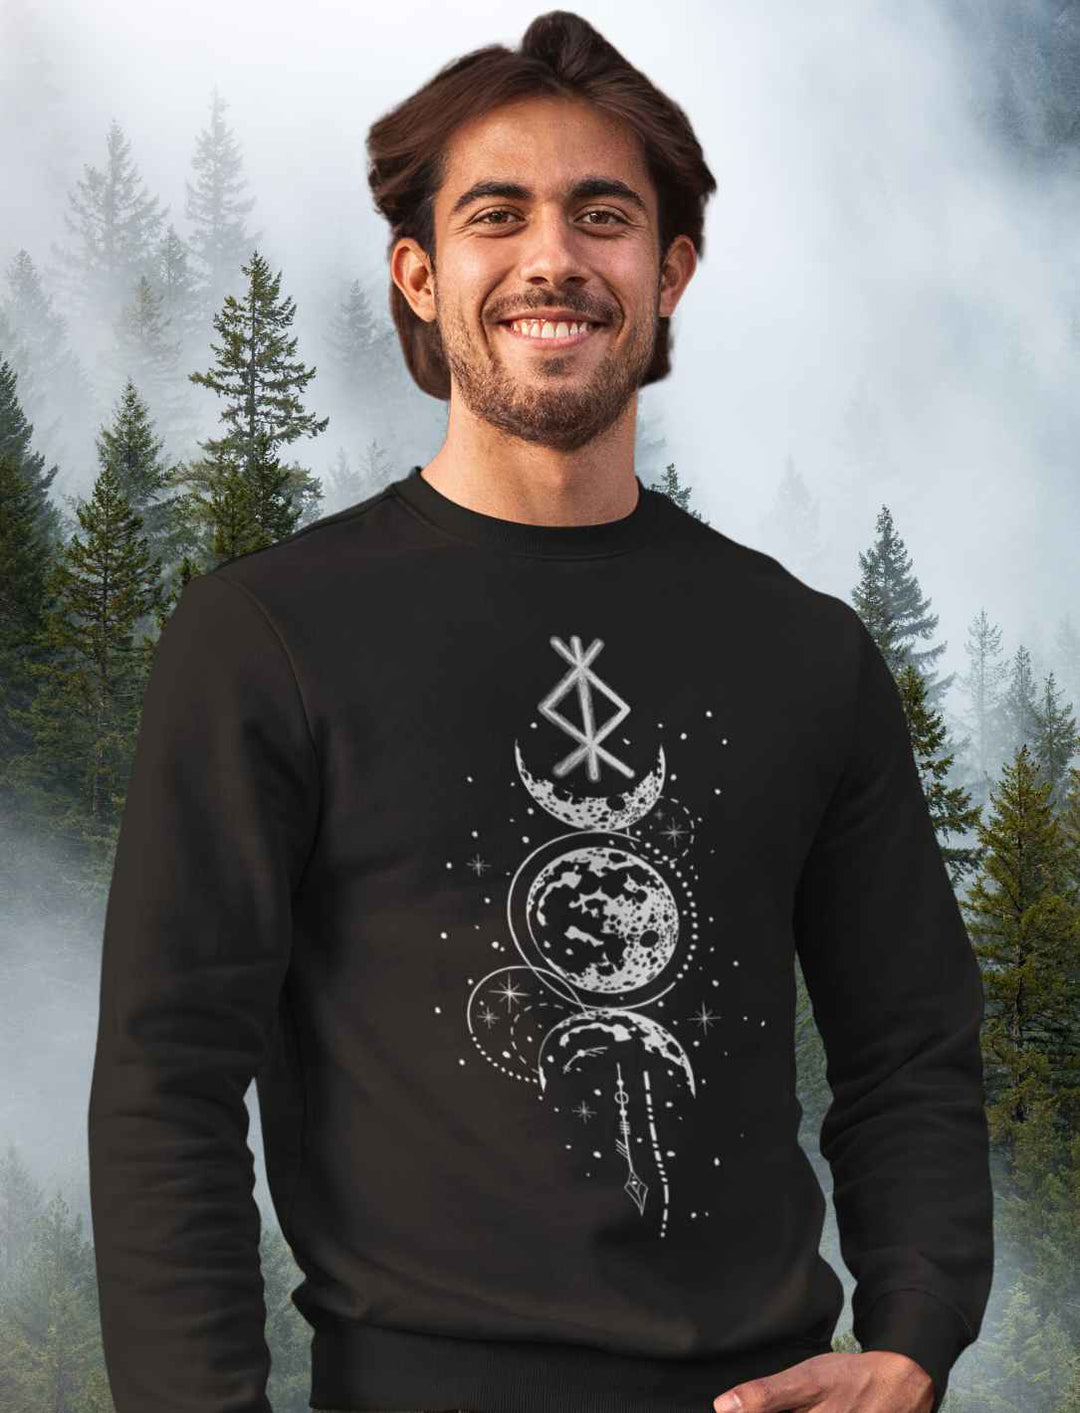 Mann trägt Sweat Shirt - Rune des Mondschein Wächters, nordisches Design in Schwarz. Von Runental.de